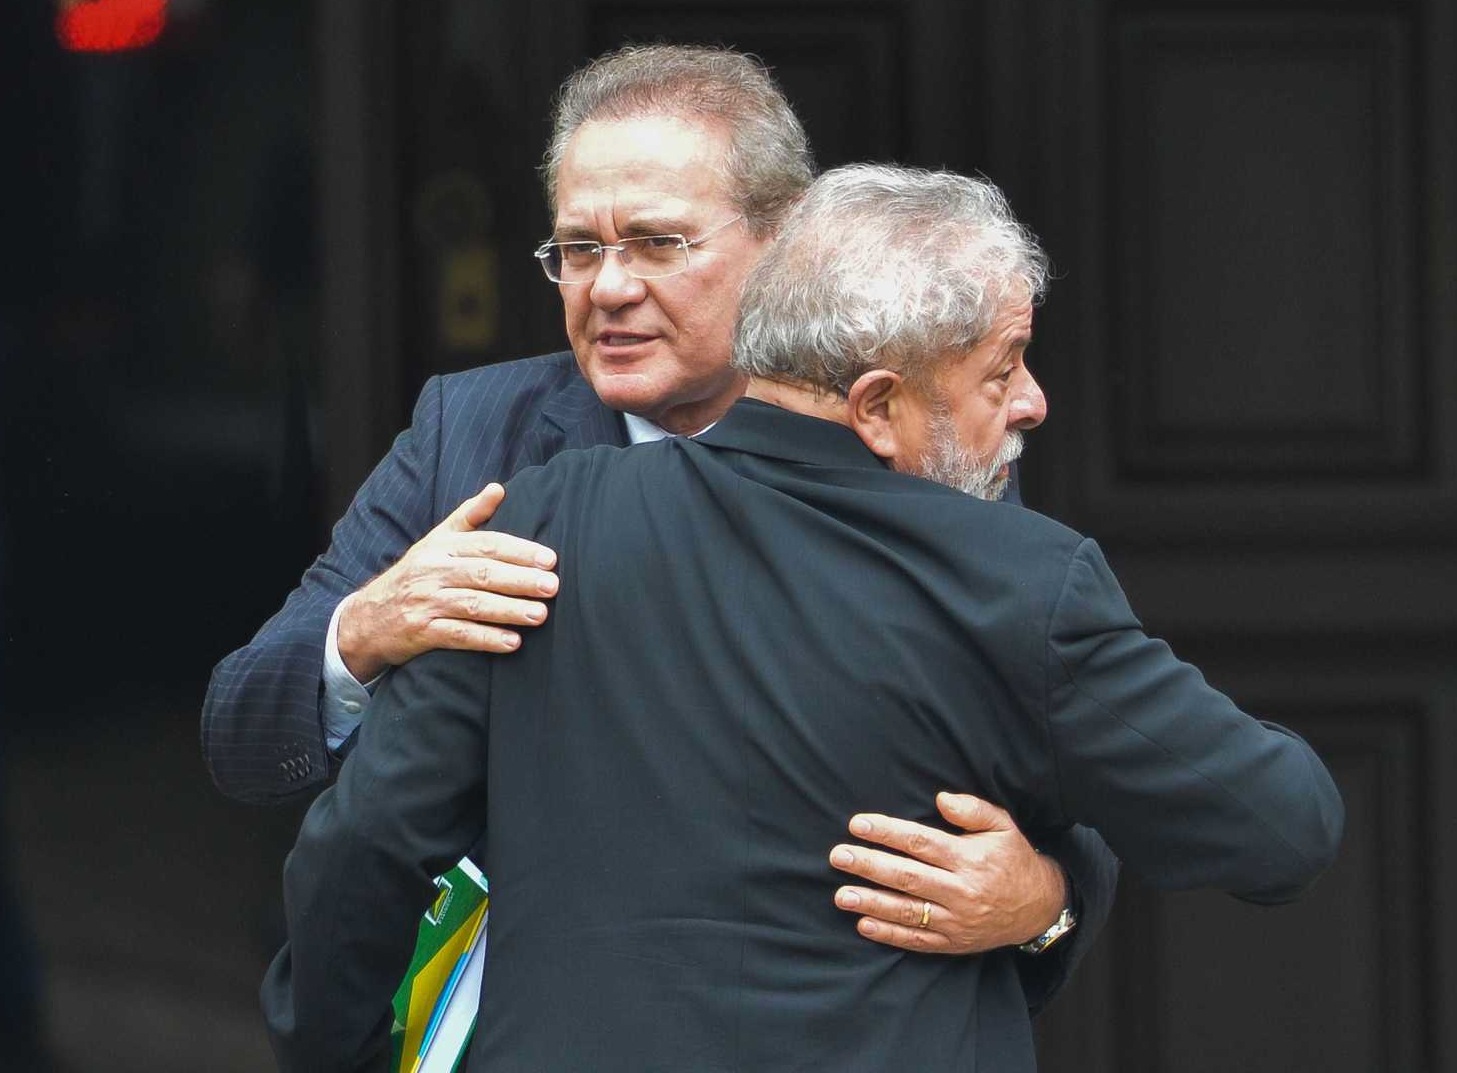 Calheiros sai em defesa de Lula: “deve ser candidato”